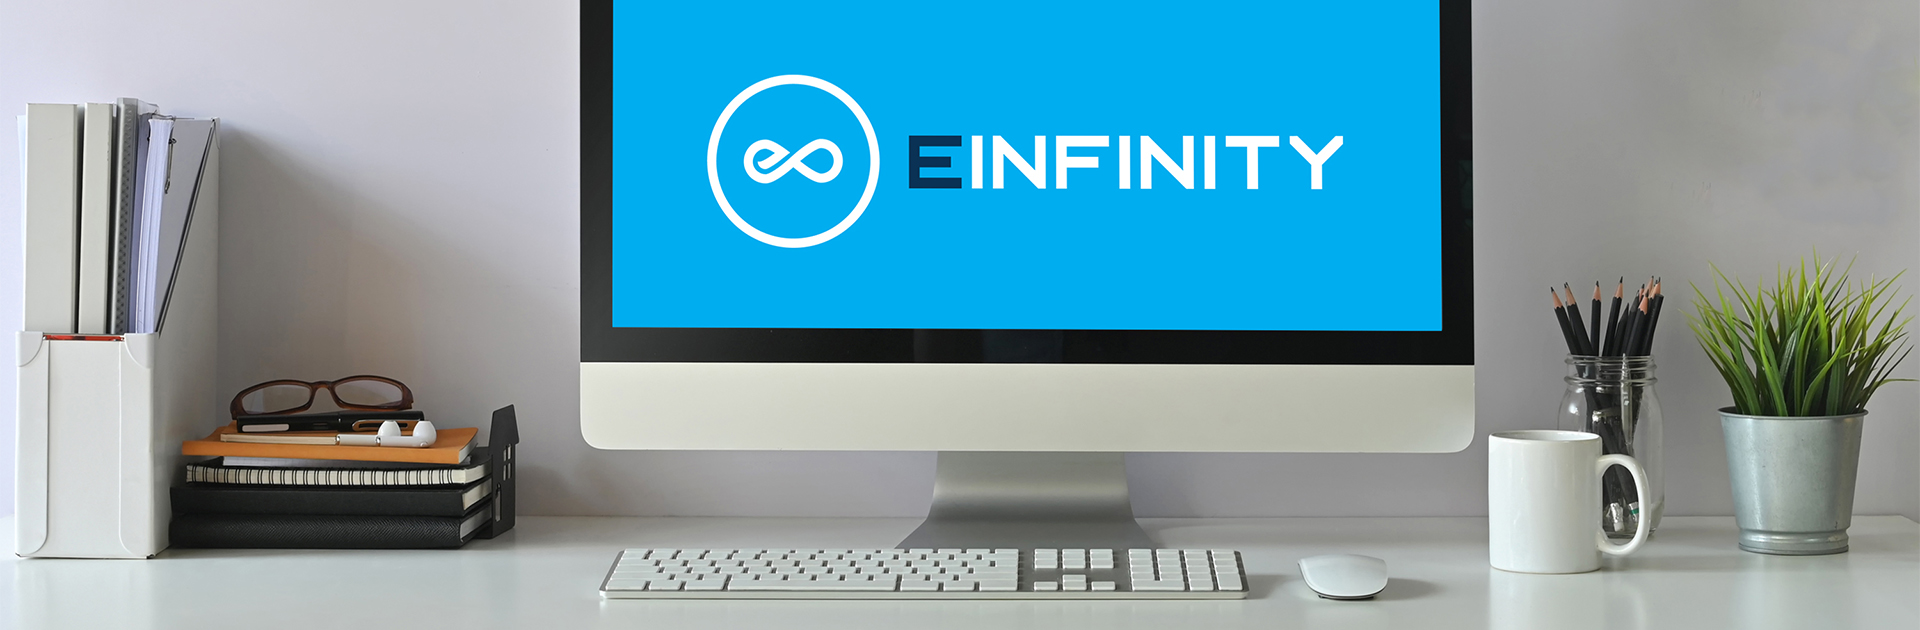 (c) Einfinity.co.uk